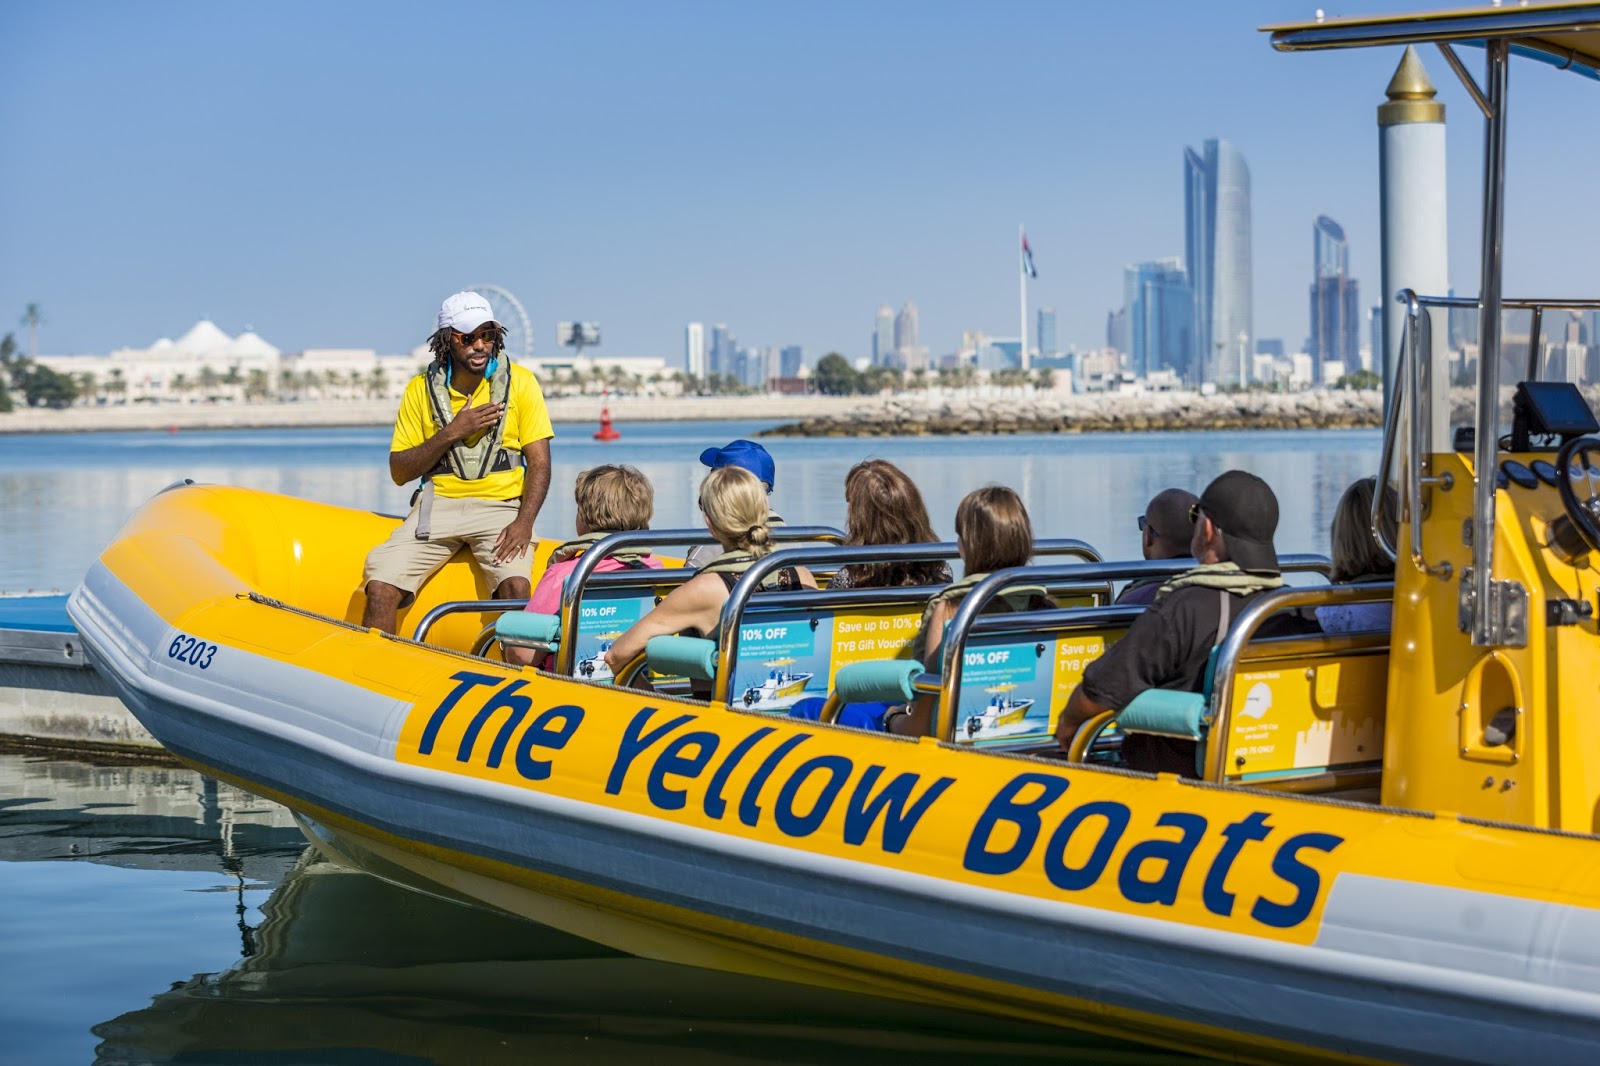 yellow boat tour abu dhabi price